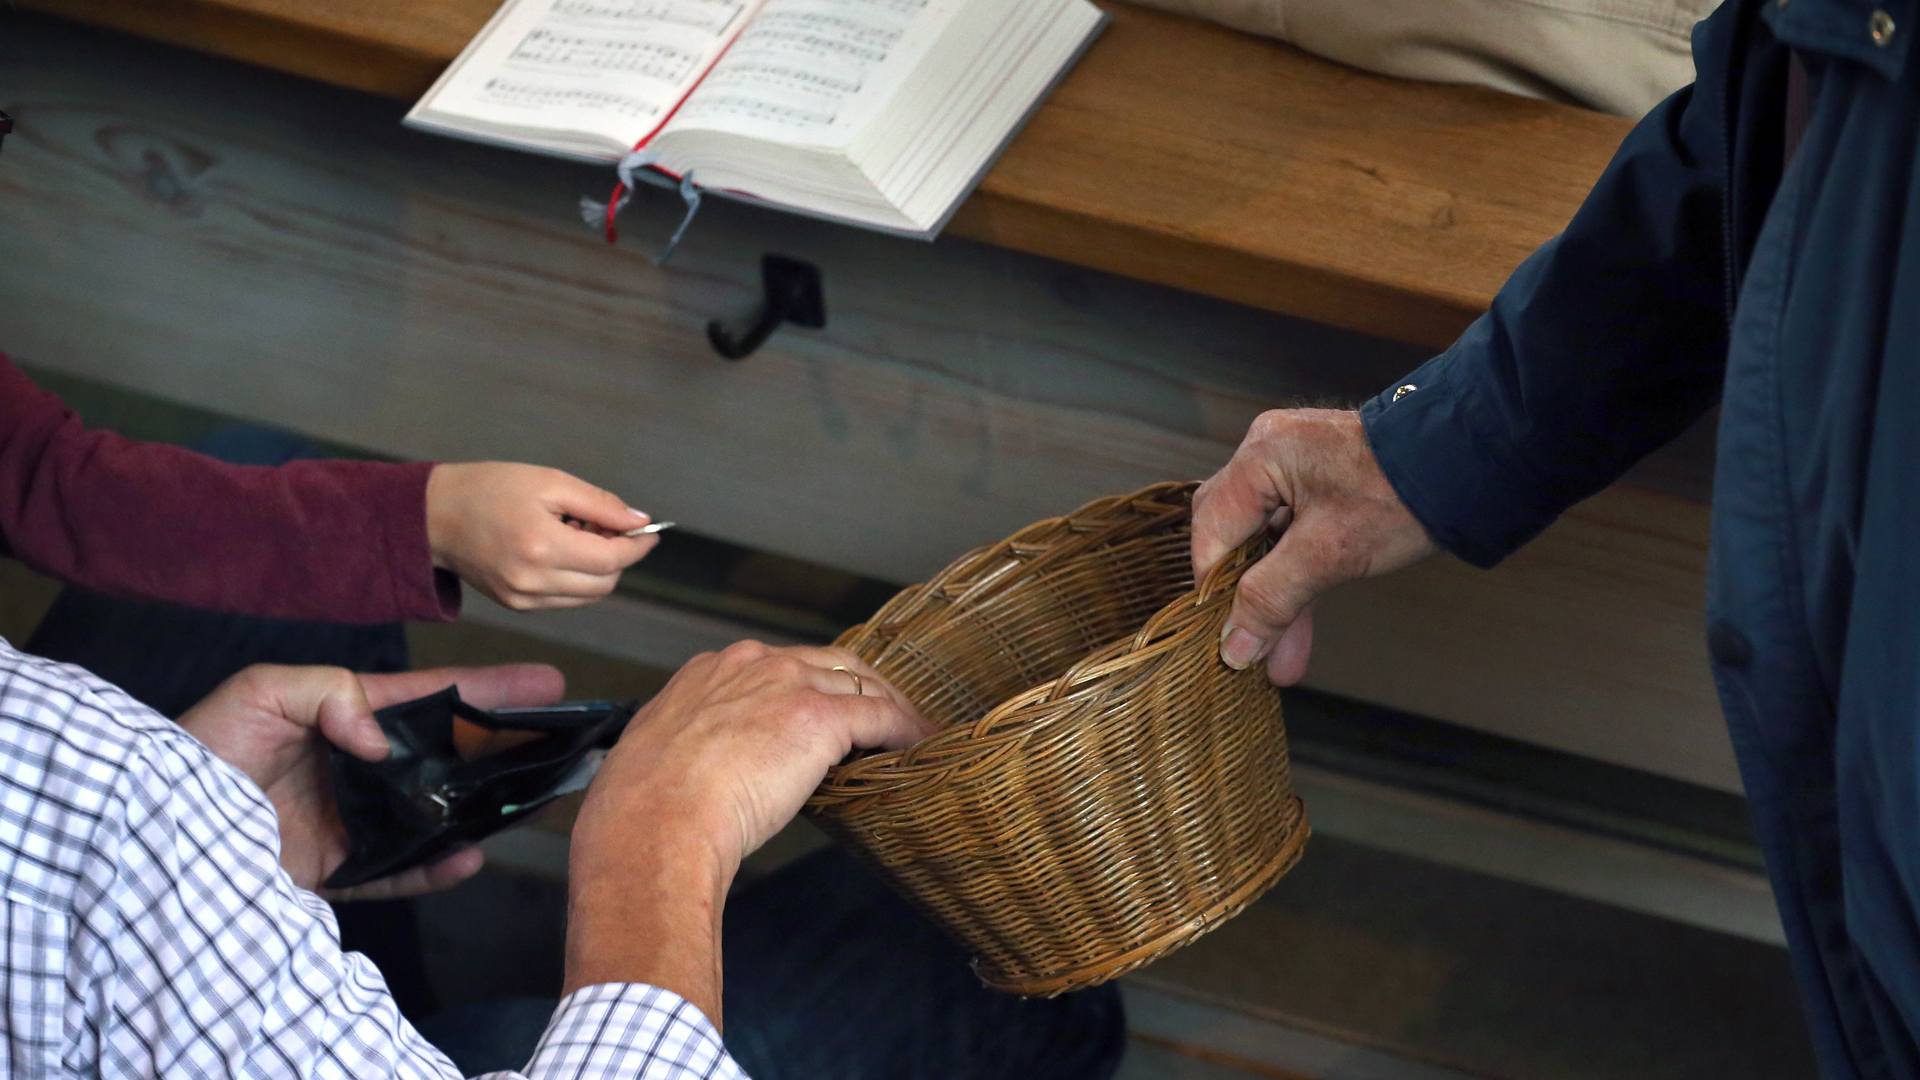 Besucher eines katholischen Gottesdienstes spenden Geld in einen herumgereichten Korb.